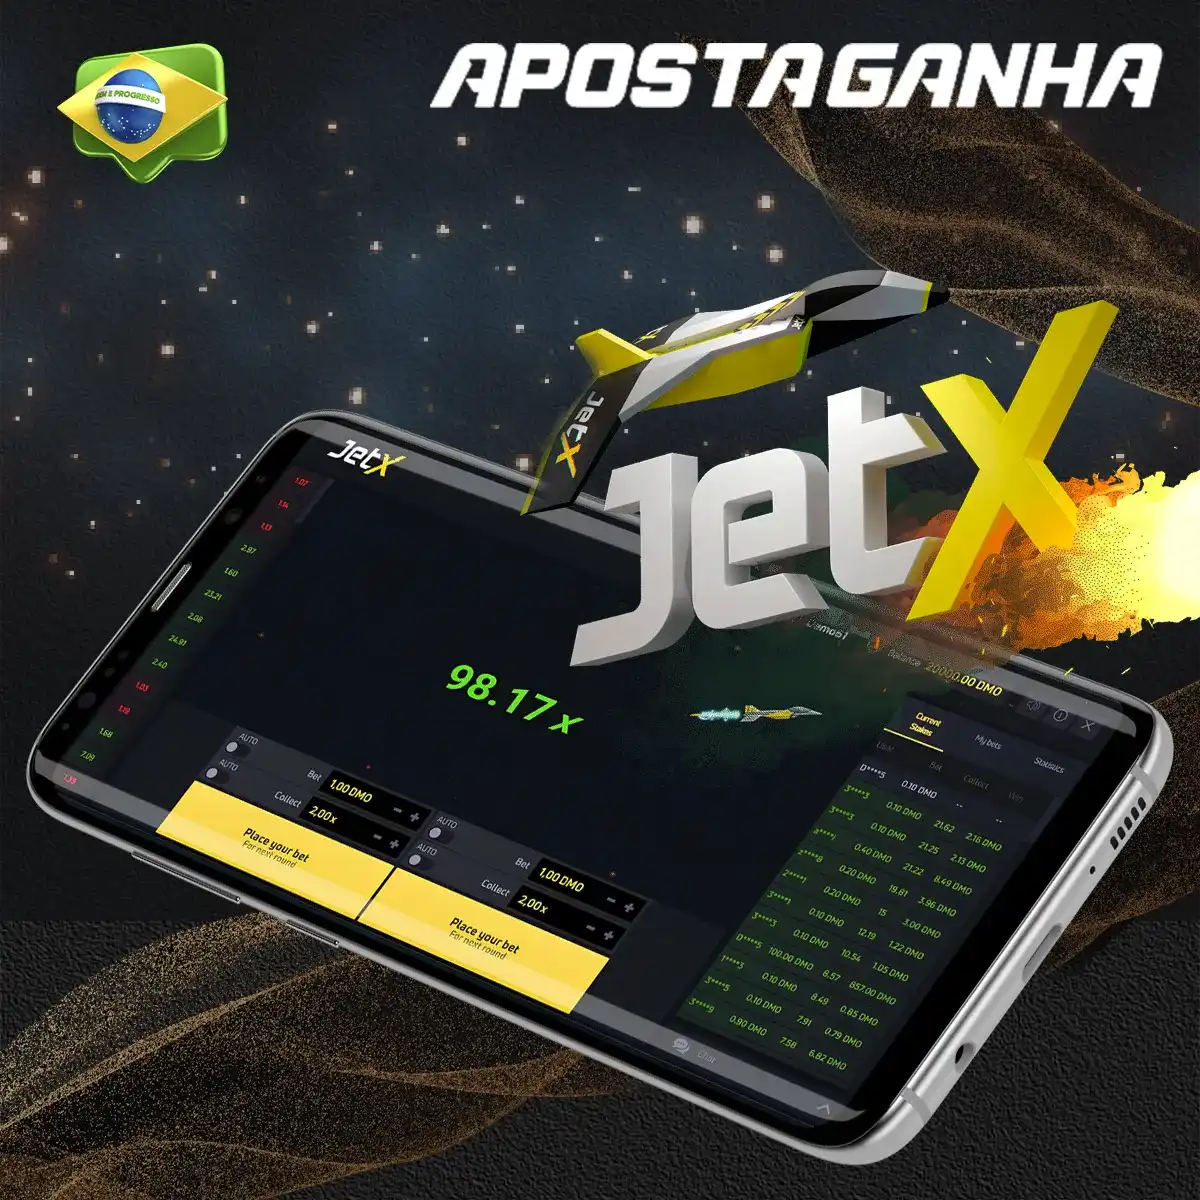 O popular jogo JetX no Cassino Aposta Ganha app no Brasil